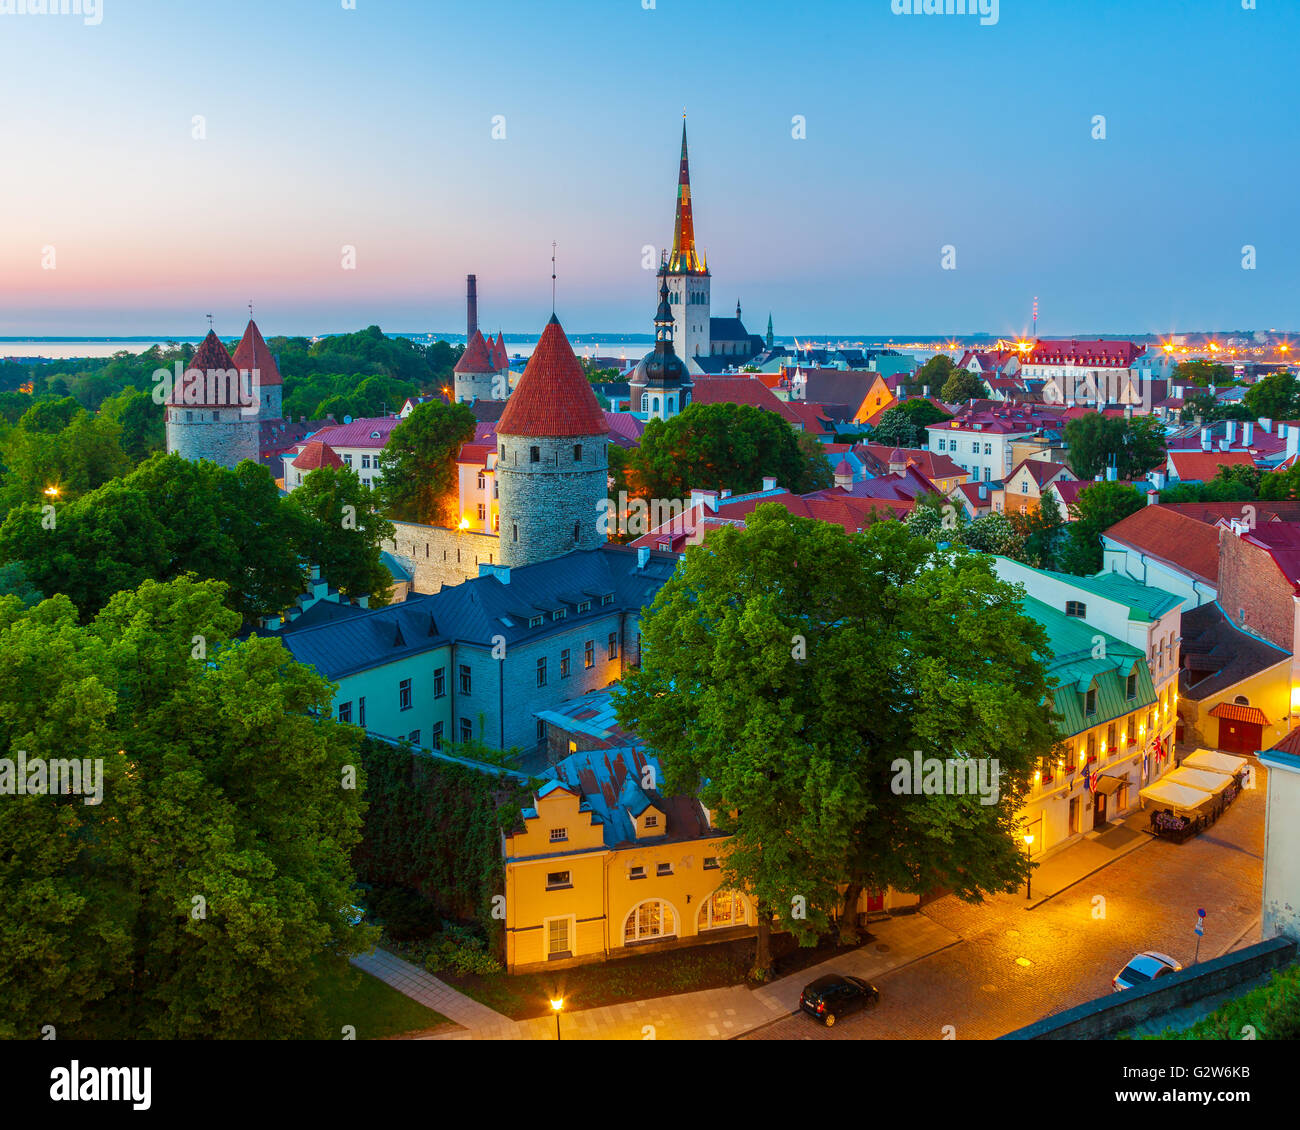 Cityscape of old town Tallinn at dusk, Estonia Stock Photo